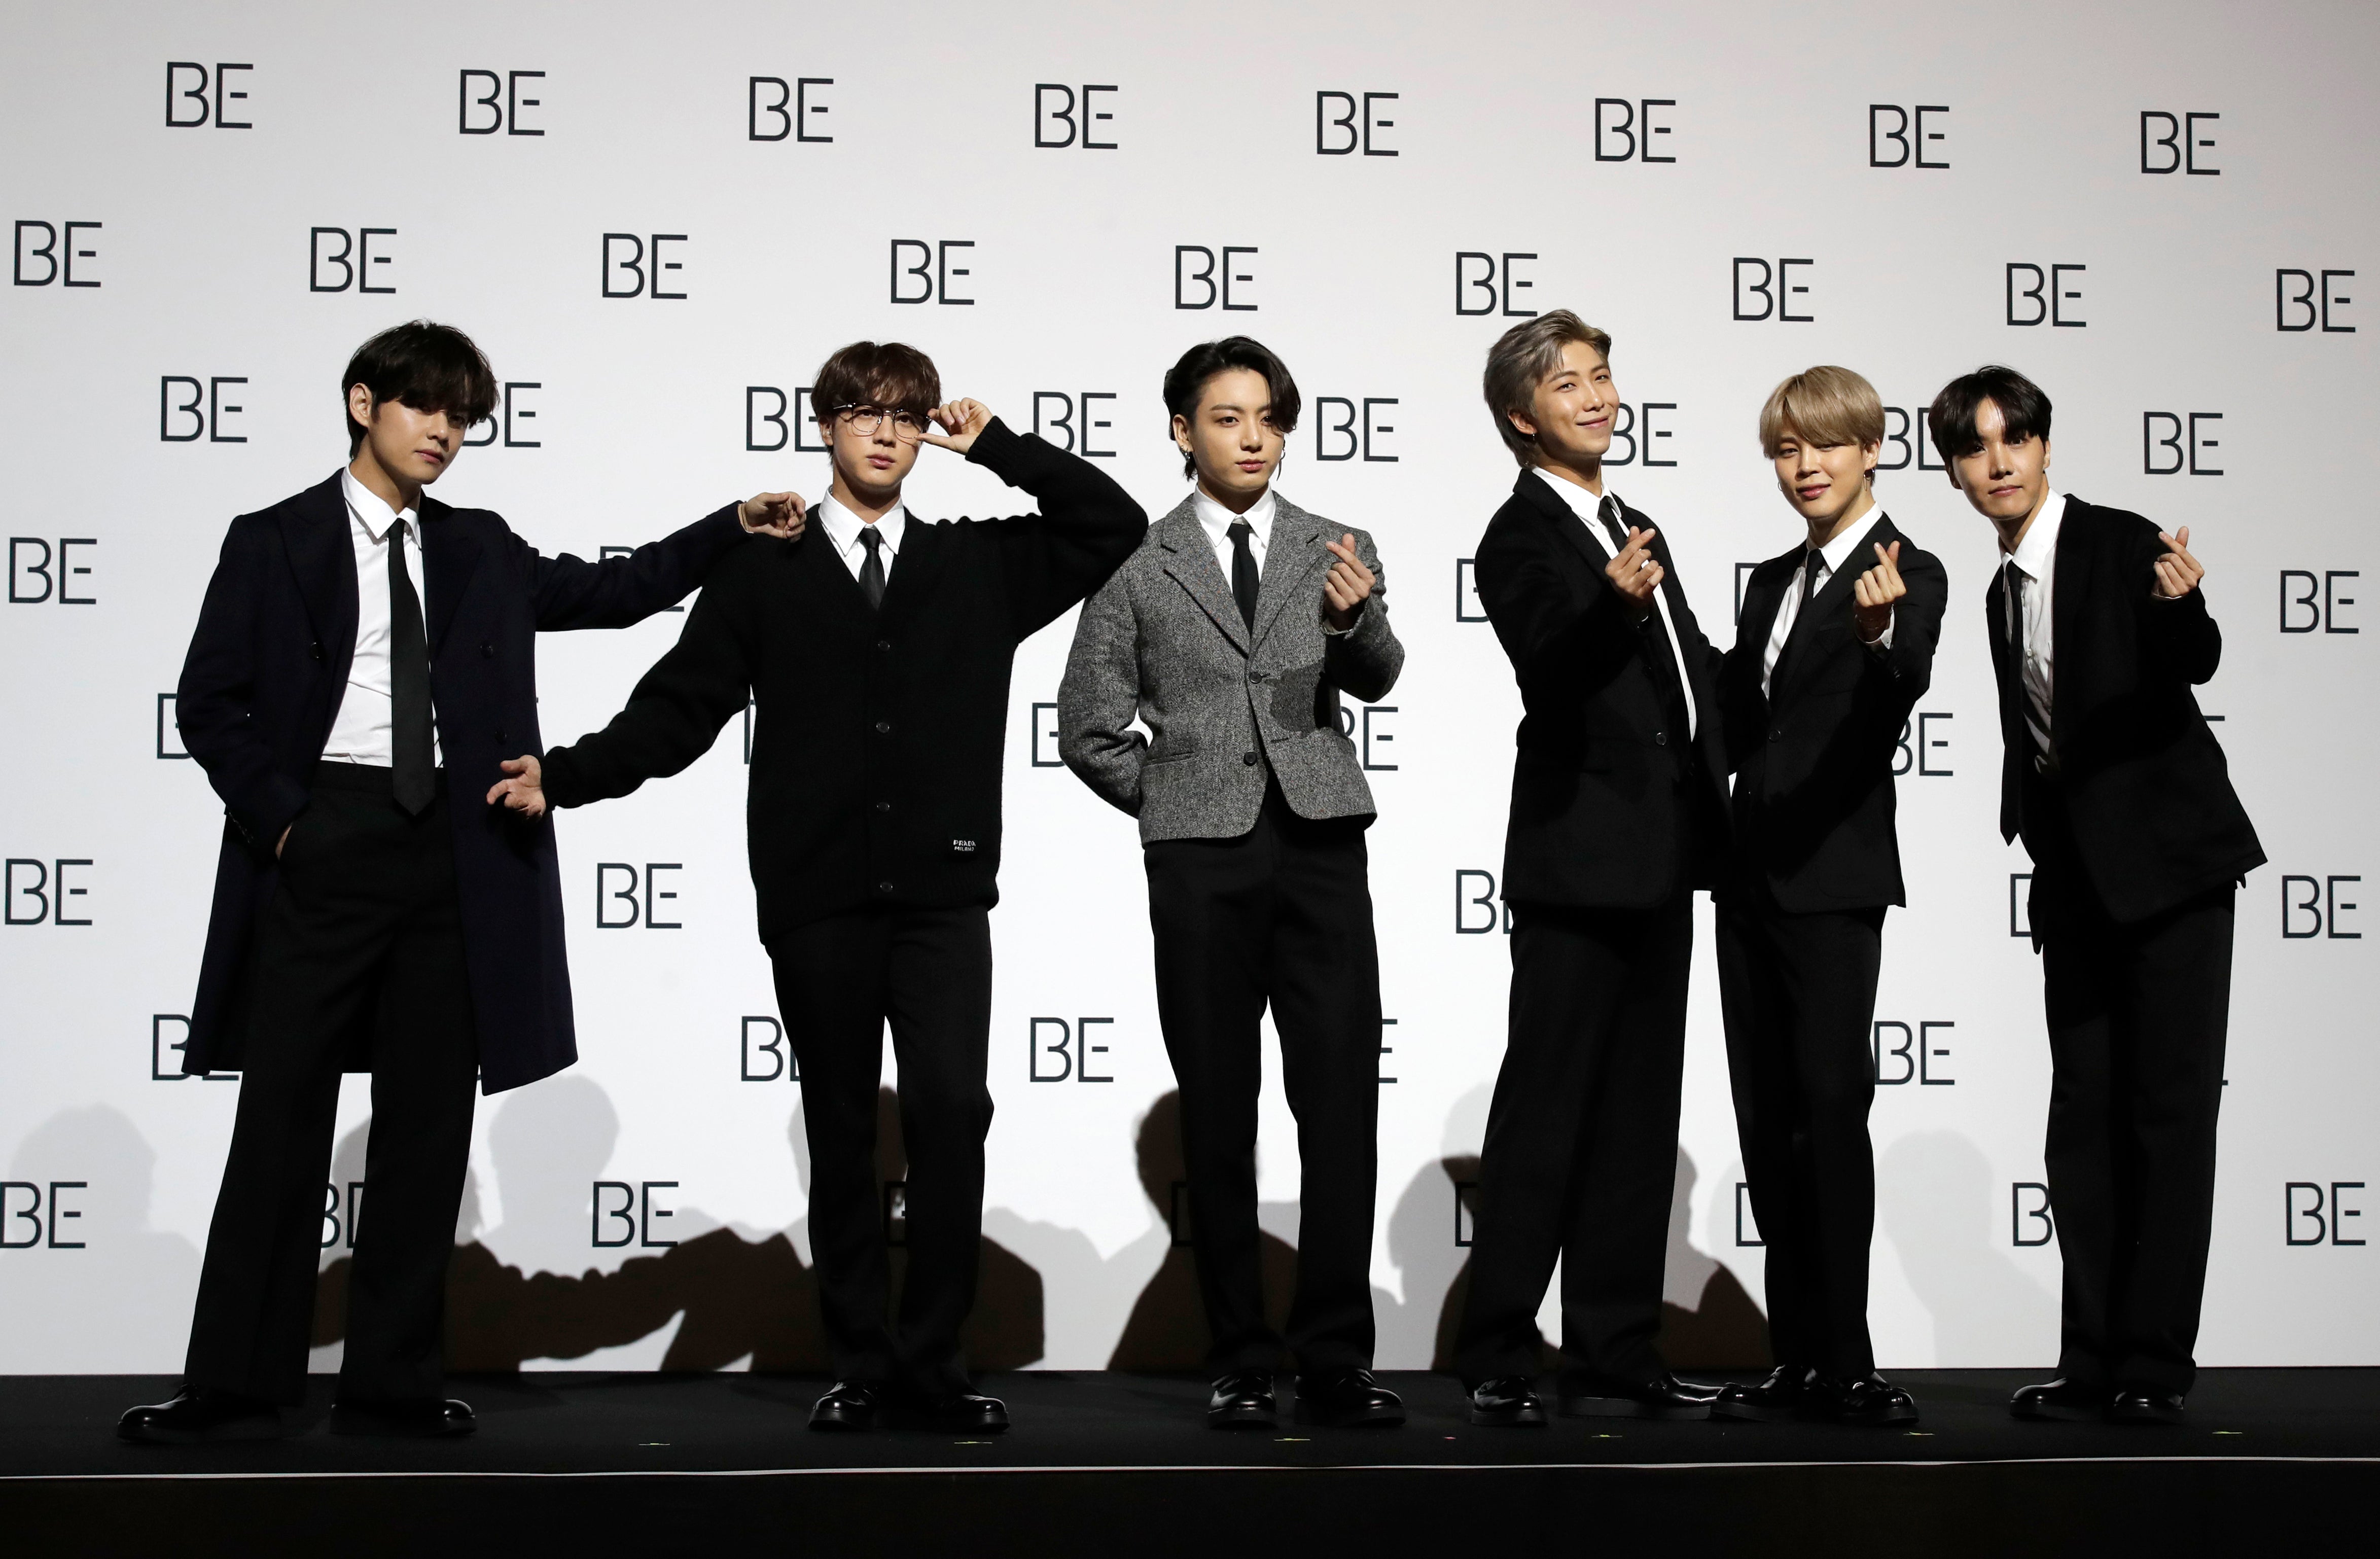 Miembros de la banda sudcoreana de K-pop BTS posan para retratos durante una conferencia de prensa para presentar su nuevo álbum "BE" en Seúl, Corea de Sur el viernes 20 de noviembre de 2020. BTS lanzó su nuevo álbum “BE” el cual describen como una “carta de esperanza”. La banda realizó una conferencia de prensa siguiendo las medidas de distanciamiento social en Seúl para presentar el álbum, el segundo que lanzan en el año. “Be” incluye su éxito en inglés “Dynamite”, que llegó a la cima de la lista Hot 100 de Billboard, siendo la primera canción de un grupo sudcoreano en lograrlo.